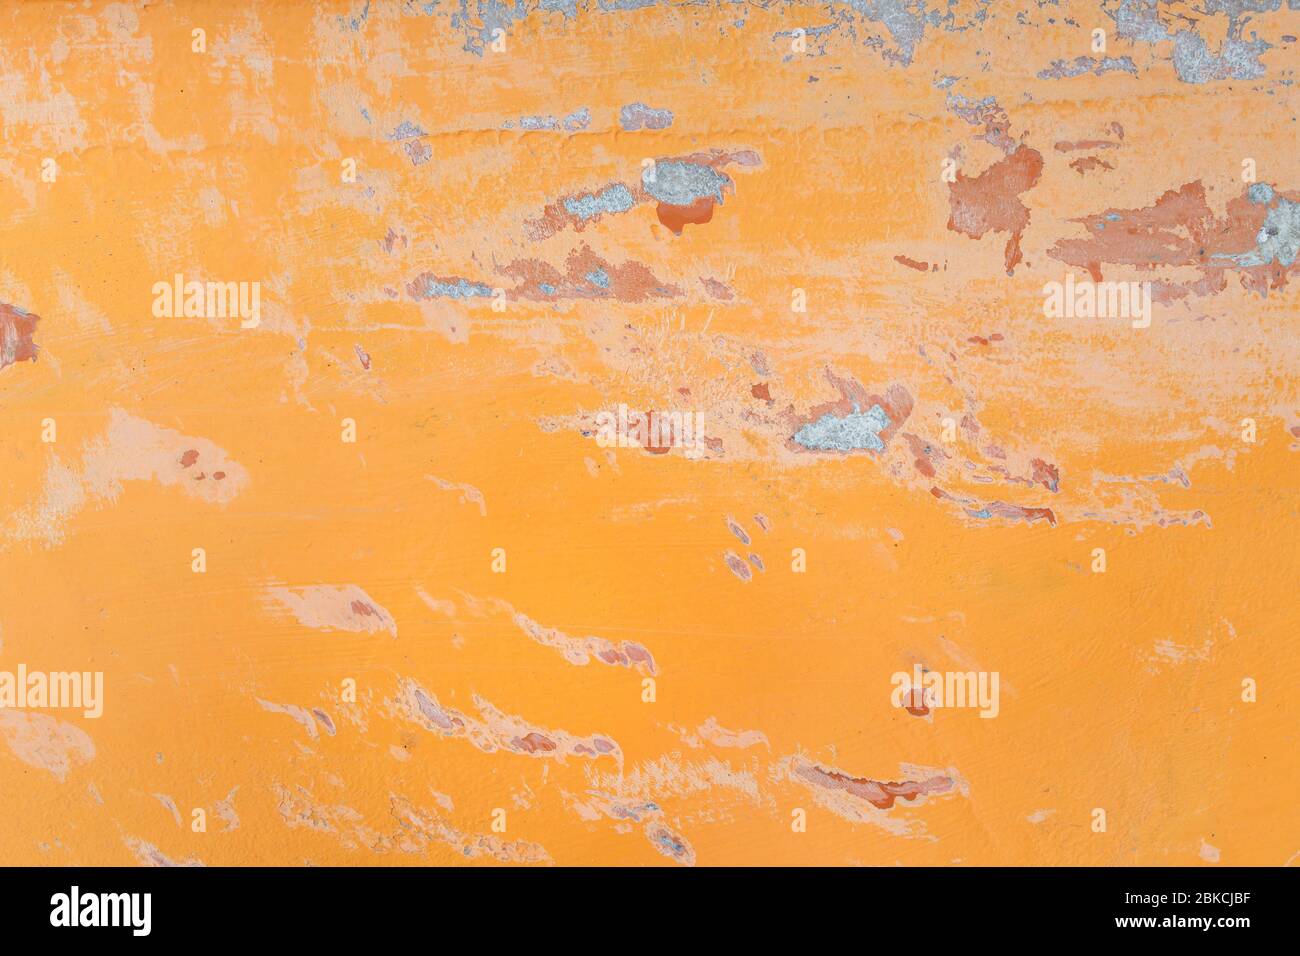 Nahaufnahme einer alten und verwitterten Oberfläche aus orangefarbenem Fiberglas (Fiberglas) mit Kratzern. Hochauflösender, abstrakter Hintergrund im Vollformat. Kopierbereich. Stockfoto